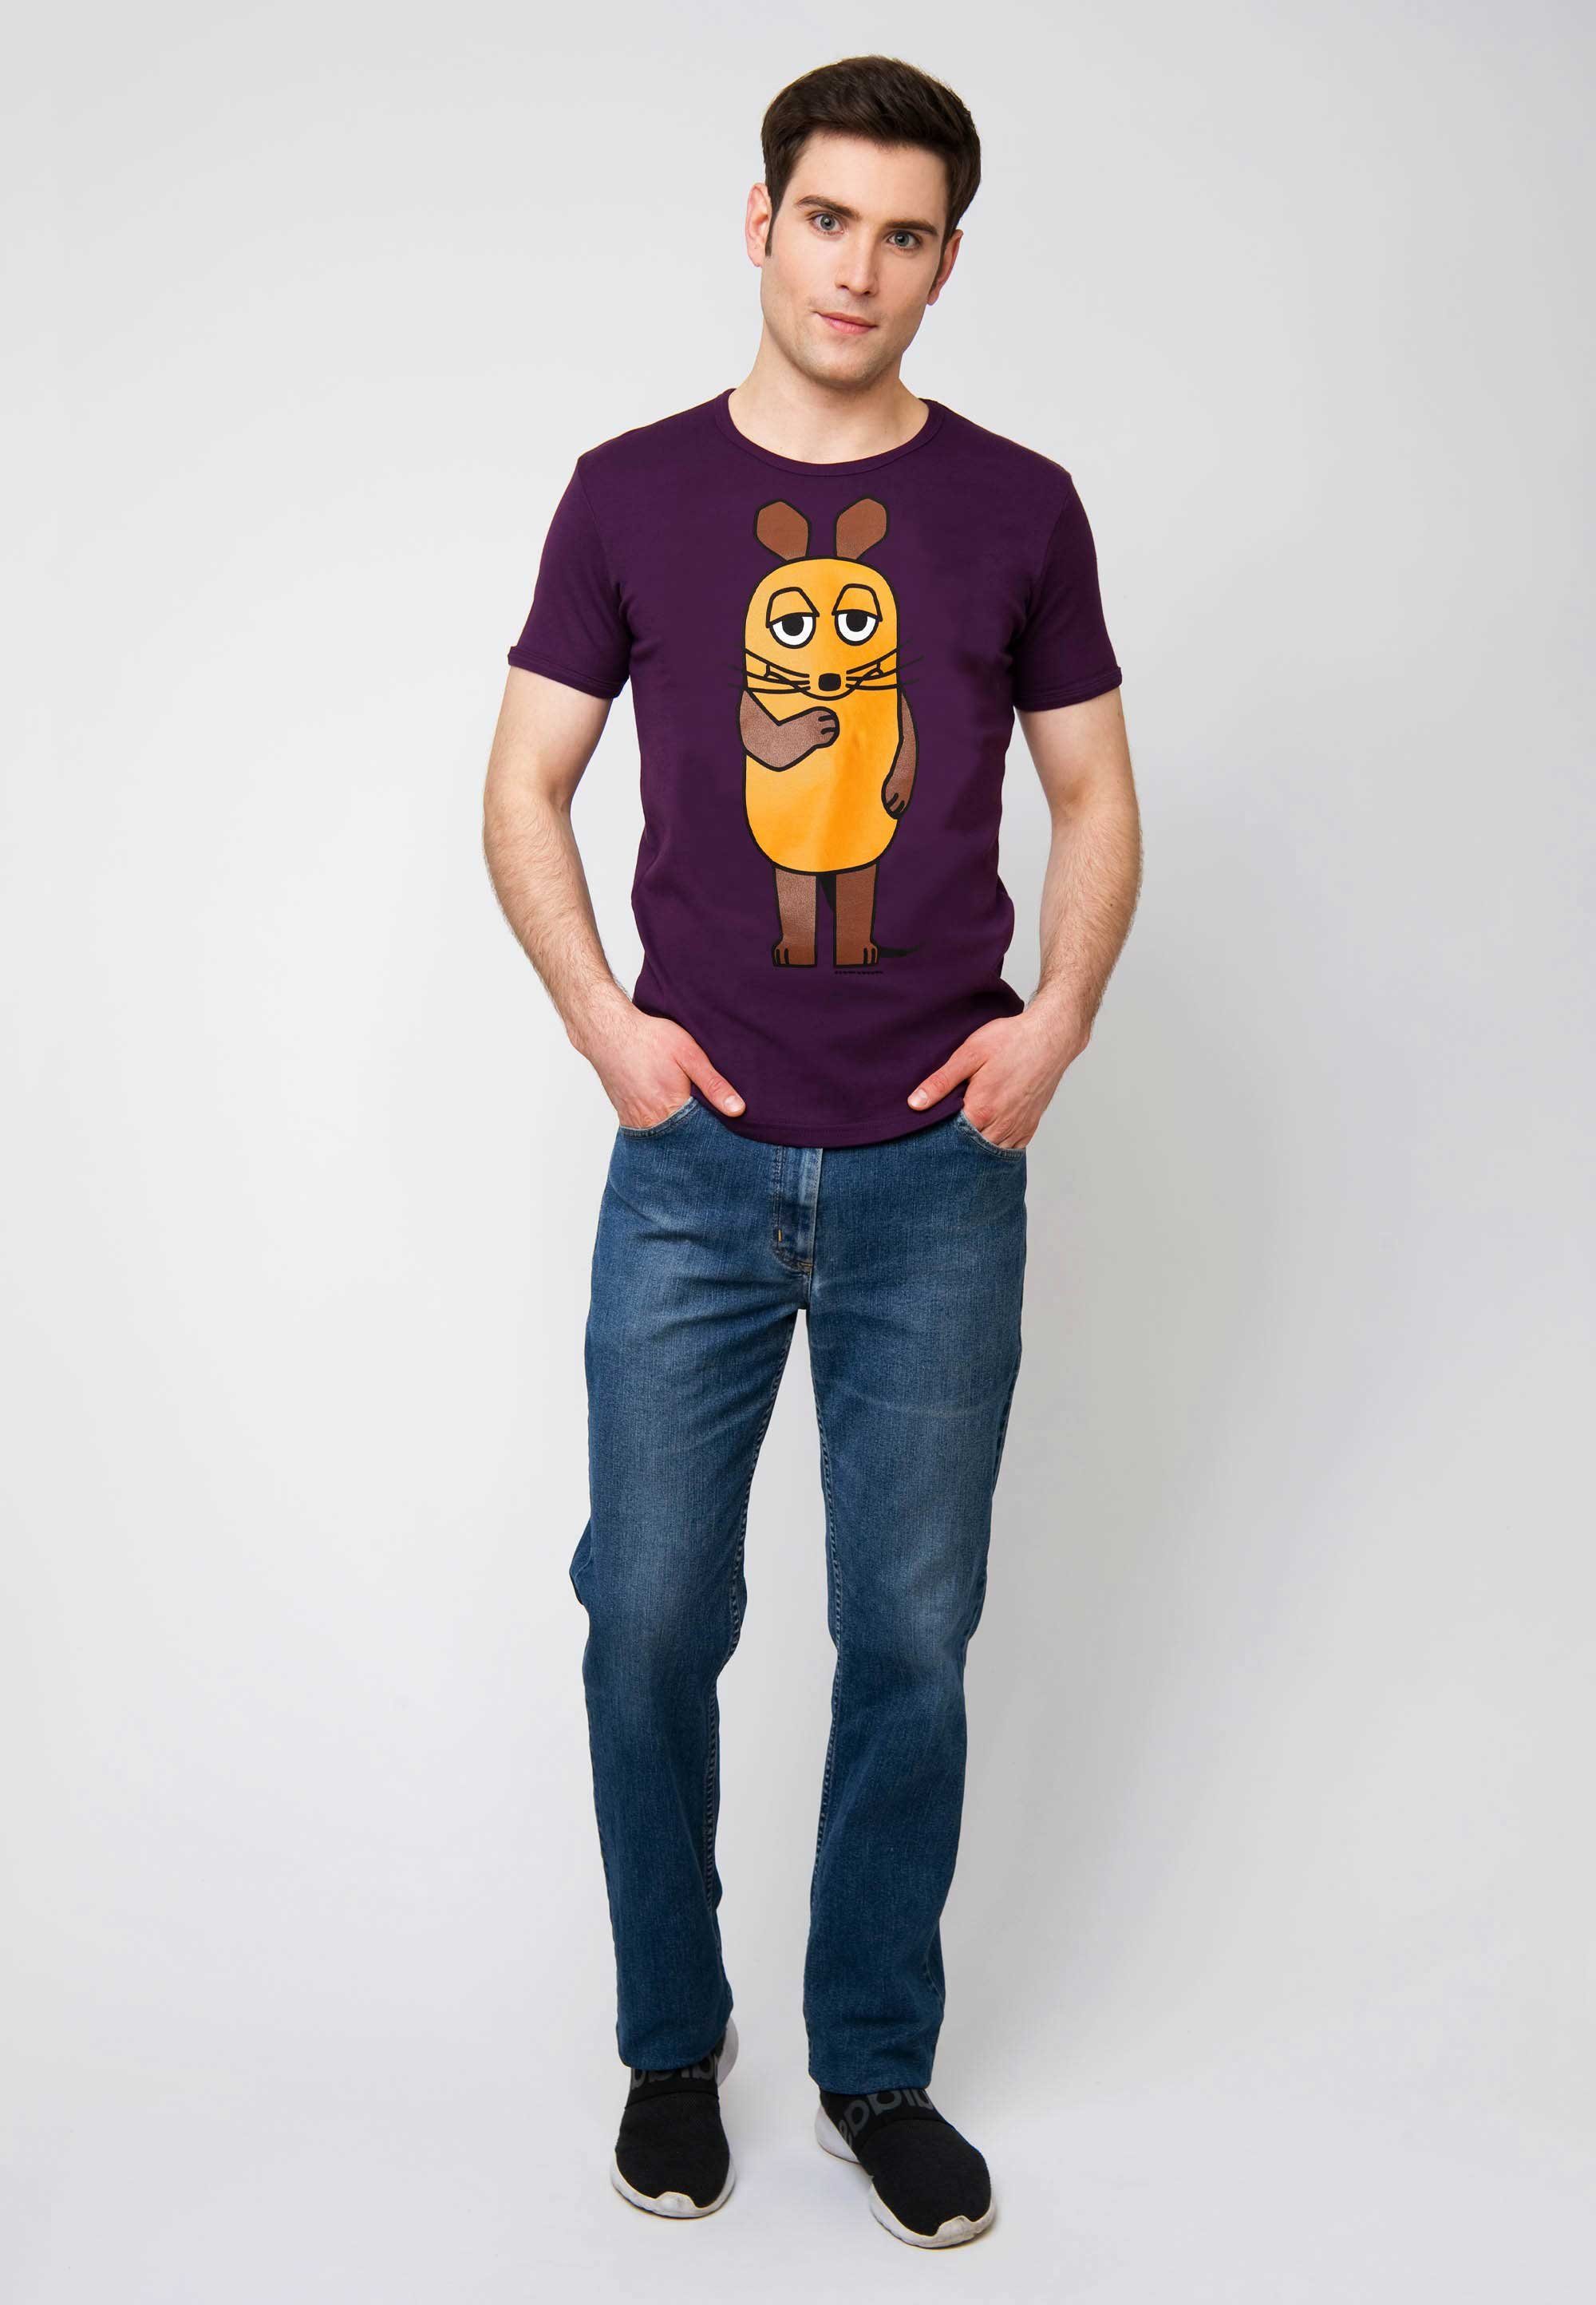 Originaldesign Maus lizenziertem mit T-Shirt Die Sendung mit violett der LOGOSHIRT